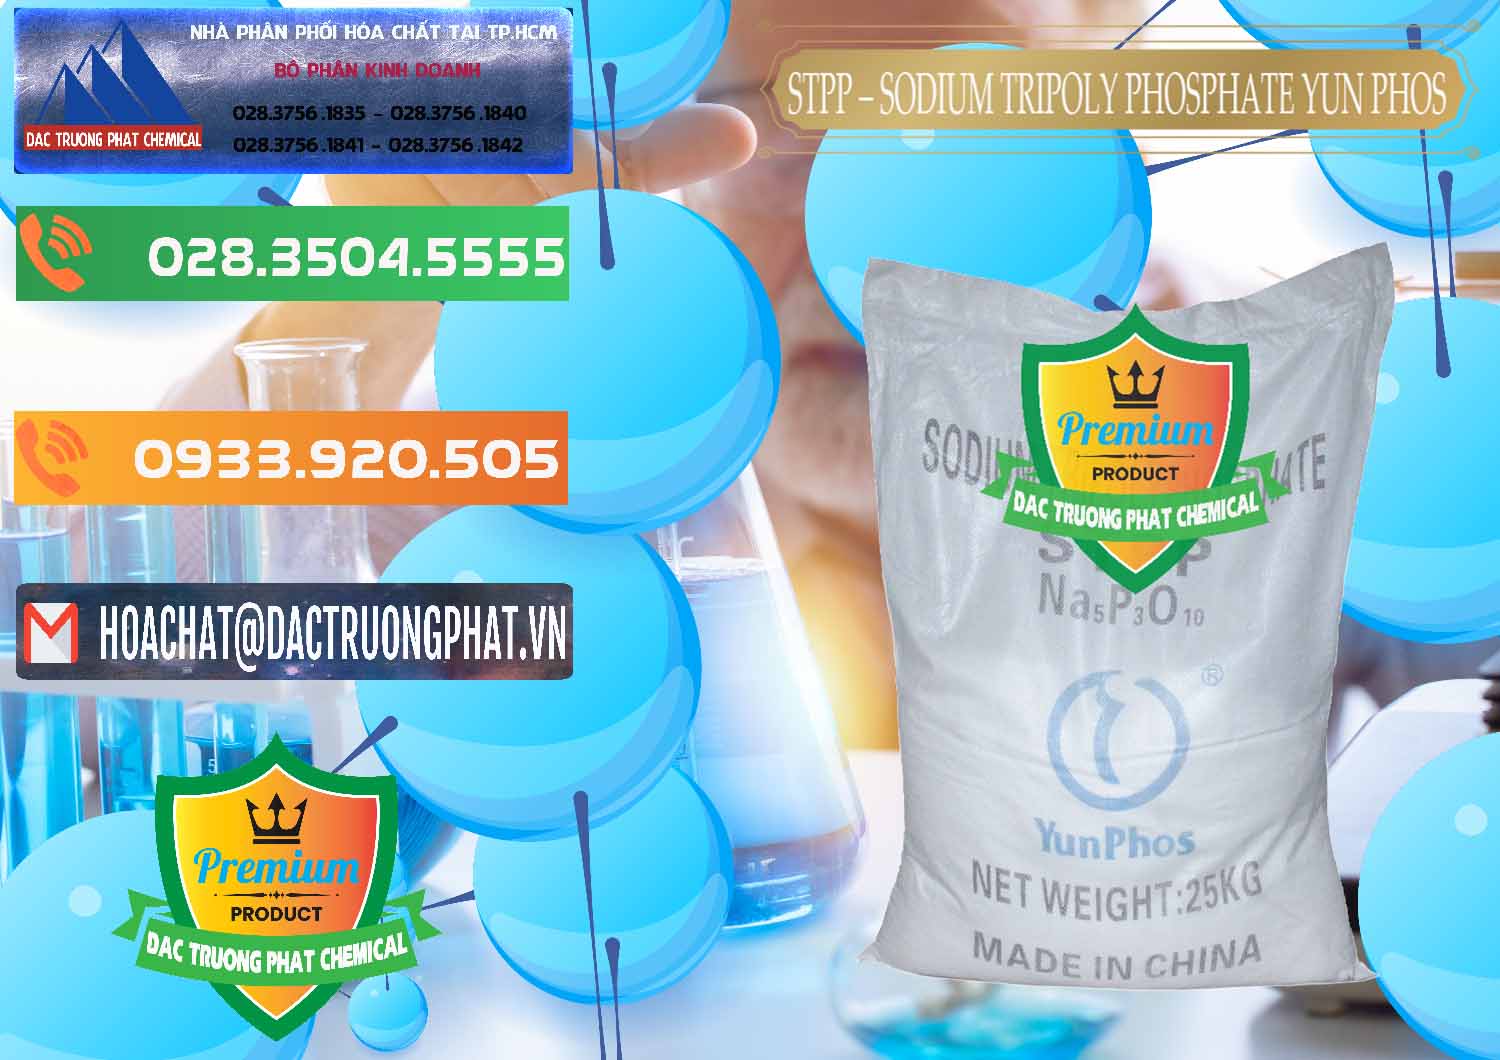 Cty cung cấp - bán Sodium Tripoly Phosphate - STPP Yun Phos Trung Quốc China - 0153 - Chuyên phân phối và kinh doanh hóa chất tại TP.HCM - hoachatxulynuoc.com.vn